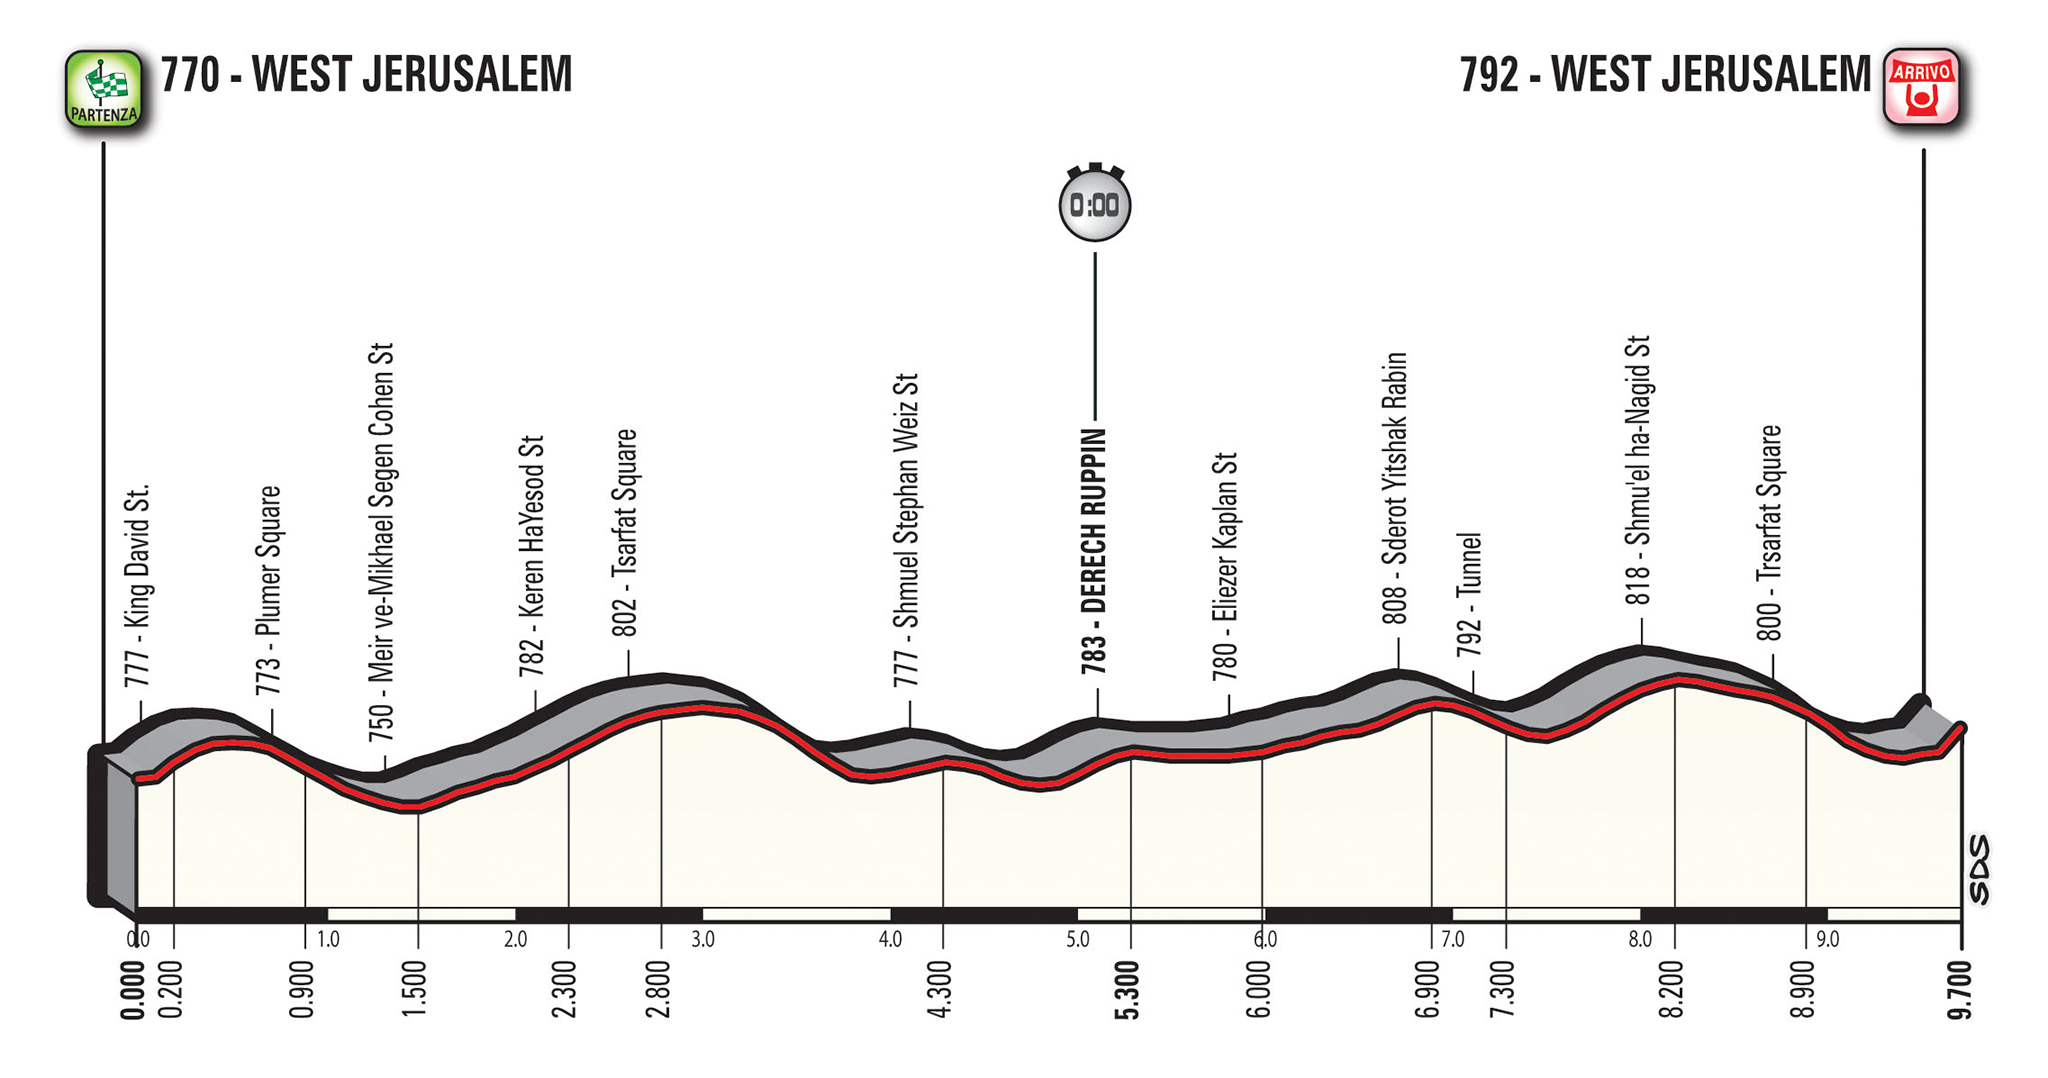 profil 1. etapu Giro d'Italia 2018